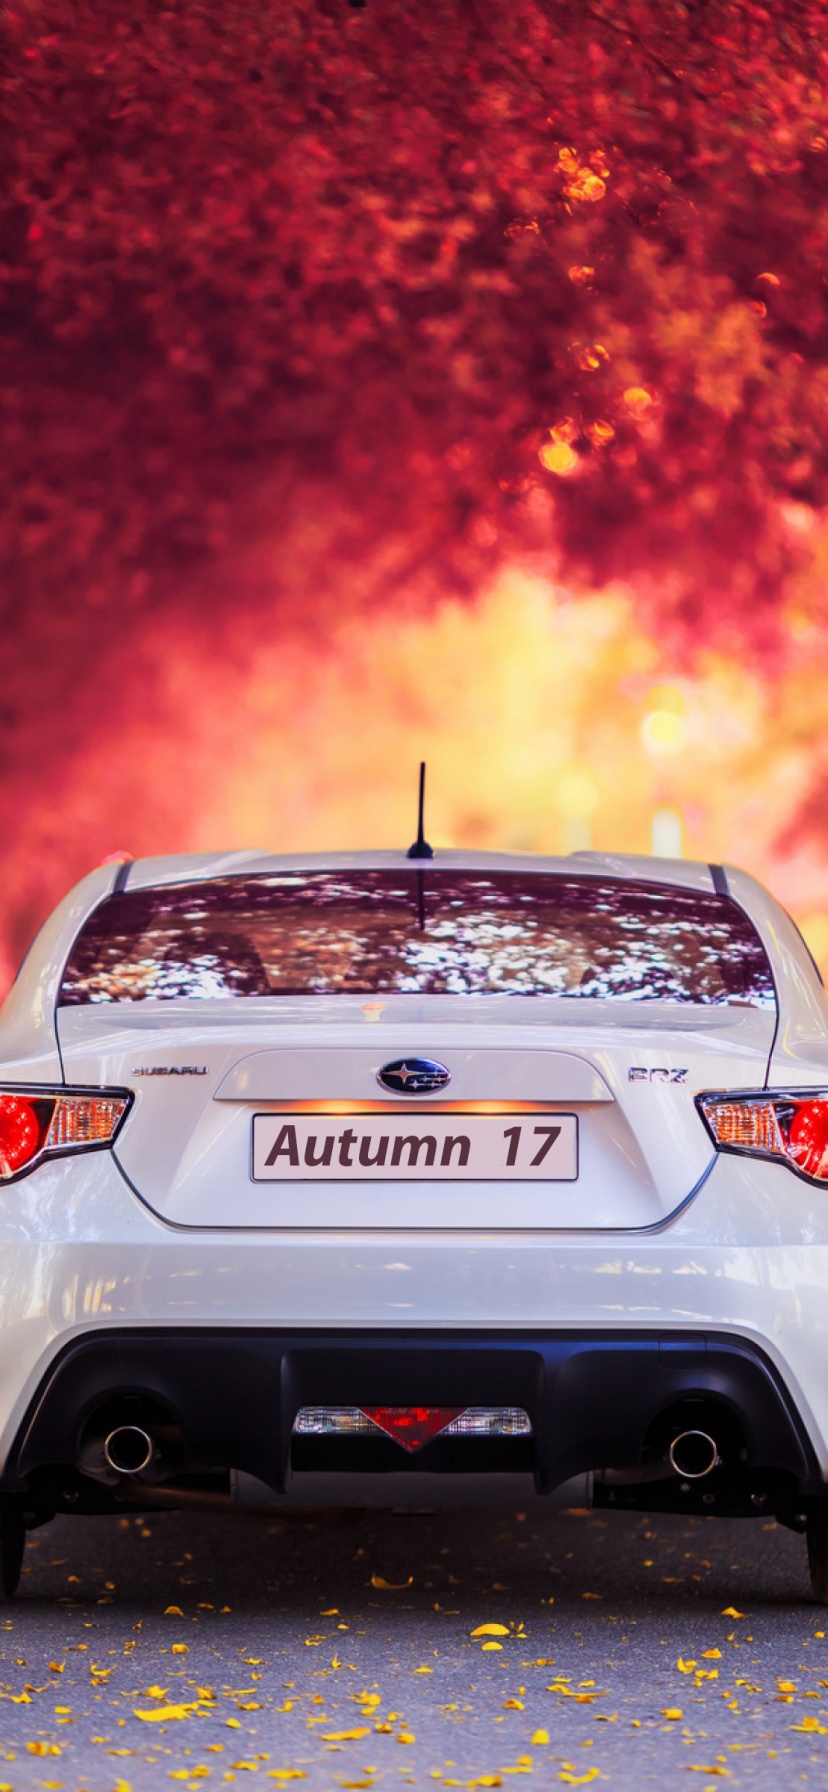 Subaru Car In Autumn